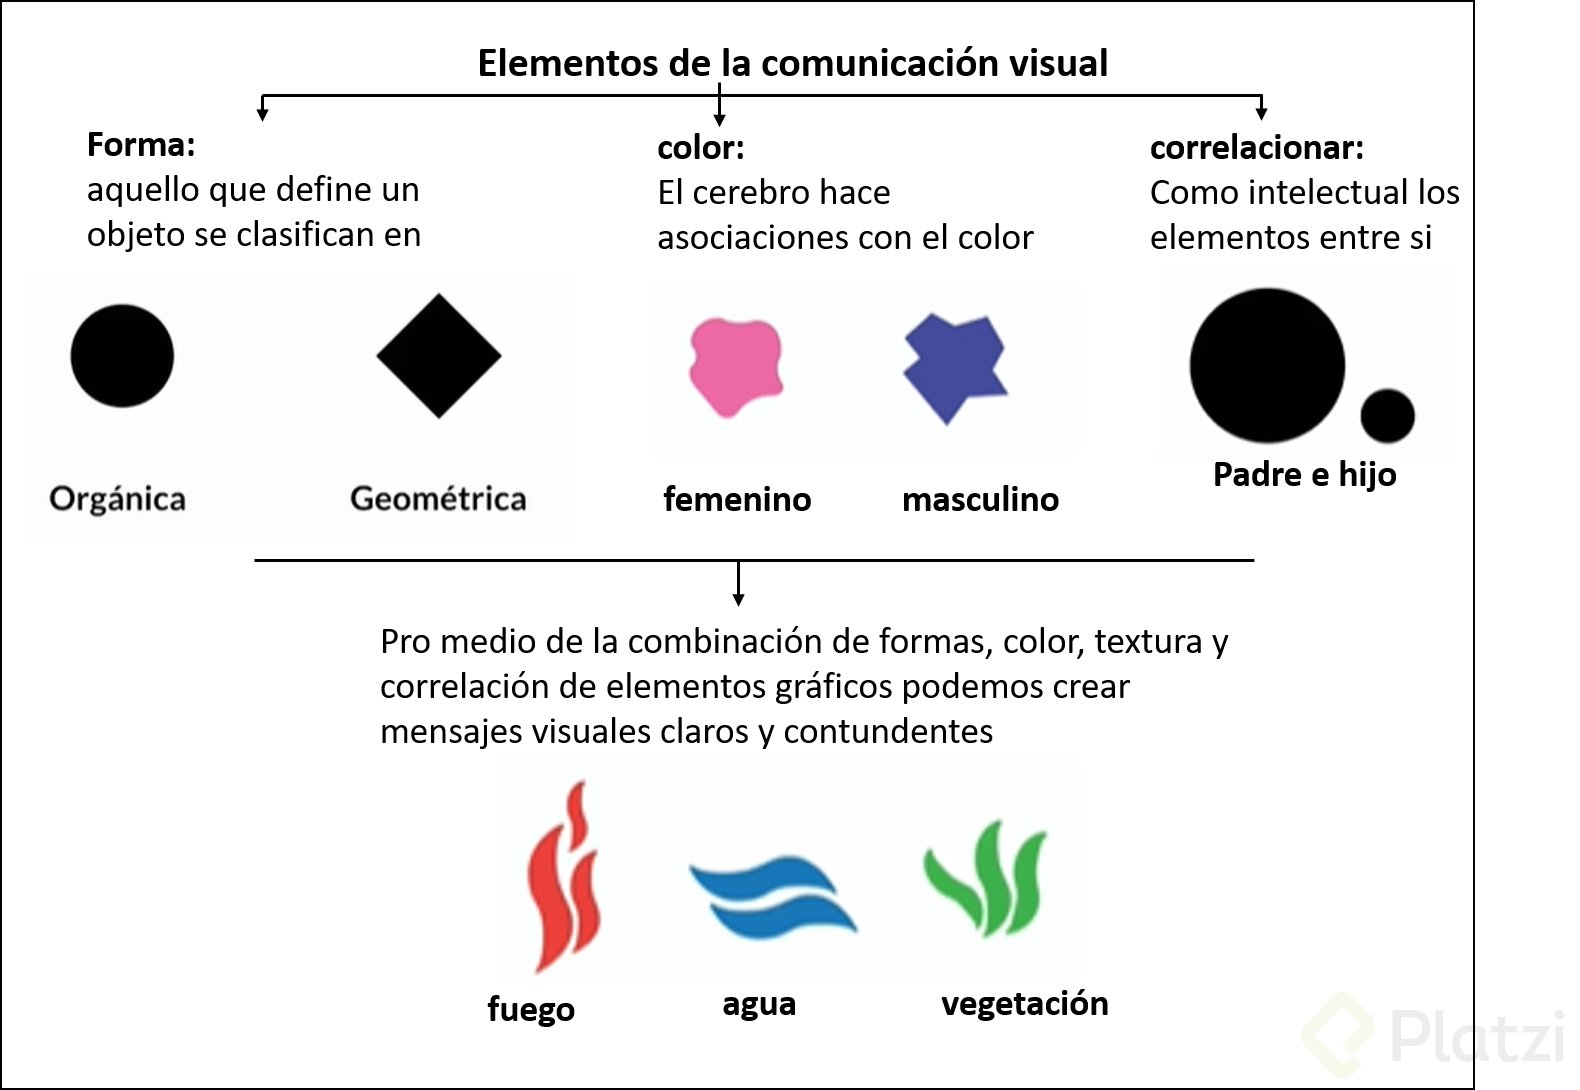 Elementos de la comunicaciÃ³n visual.png